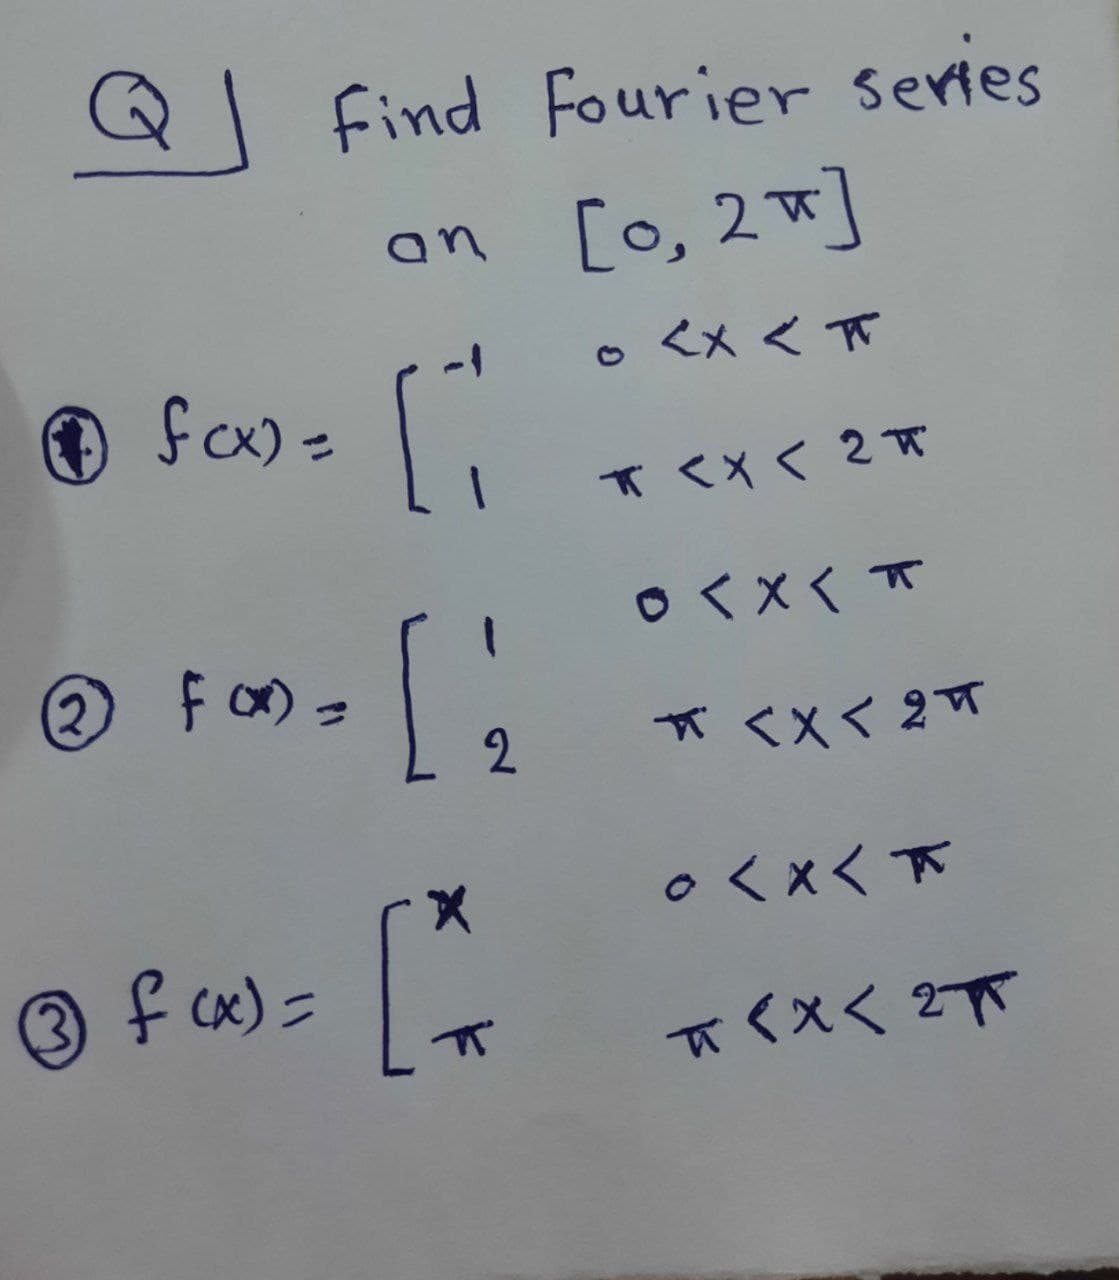 ® fam -
find Fourier series
an [o, 2]
<x<π
fcx) =
1 K<X< 2π
o<×くT
② Foの=
2
*<Xく 2T
○くxく下
3 f cx) =
π<Xく 2下
